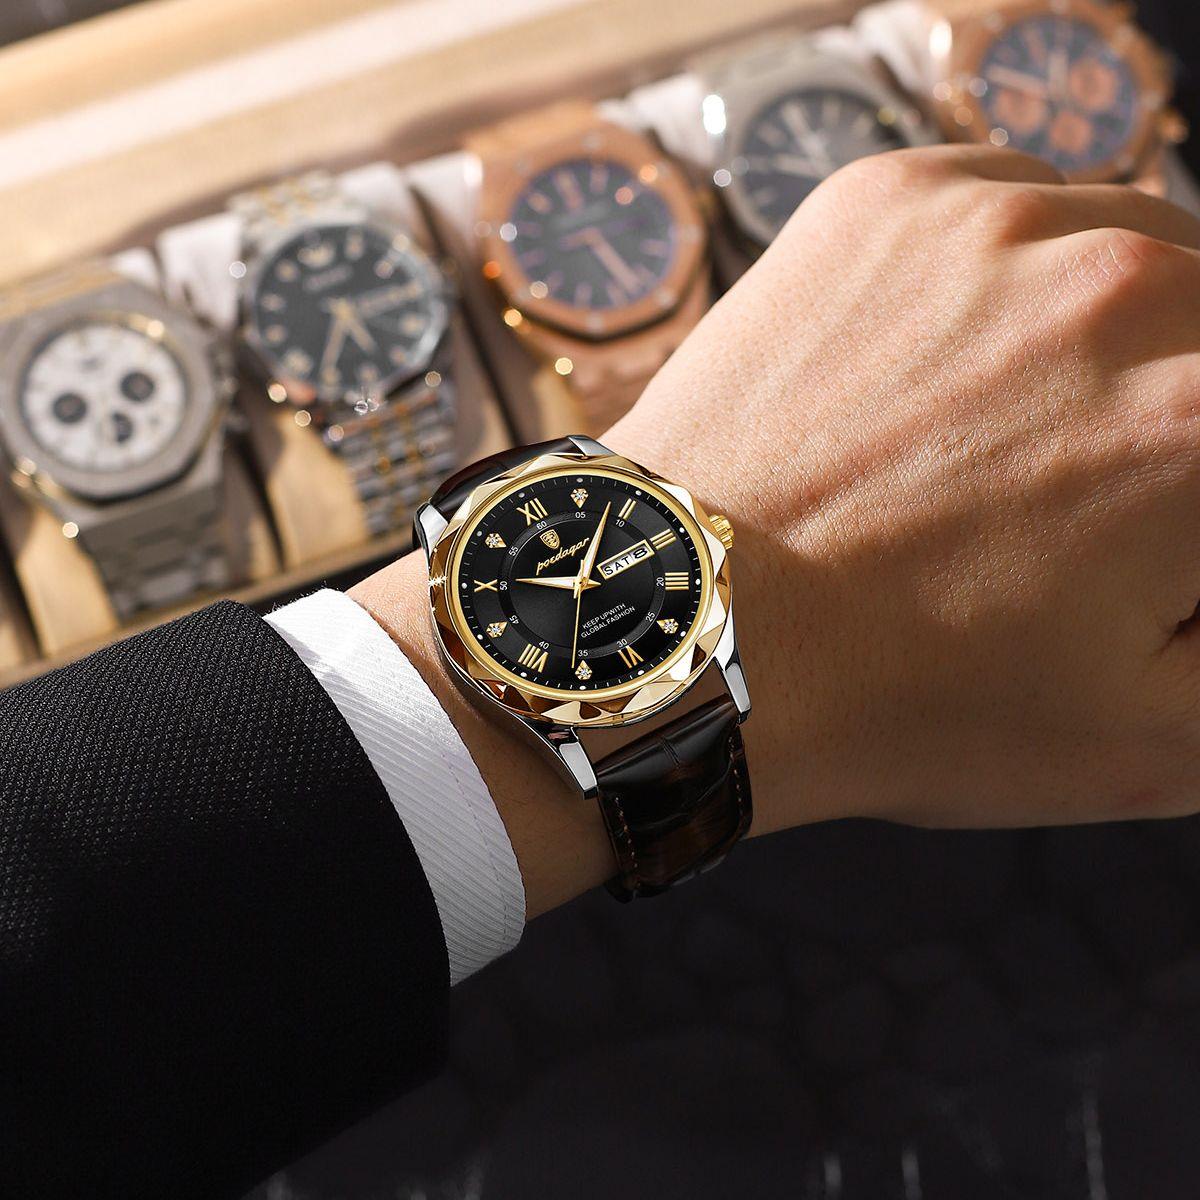 Relógio Bazzer CL90 - Alfa Wear - relógio, relógio de couro, relógio de metal, relógio esportivo, relógio masculino